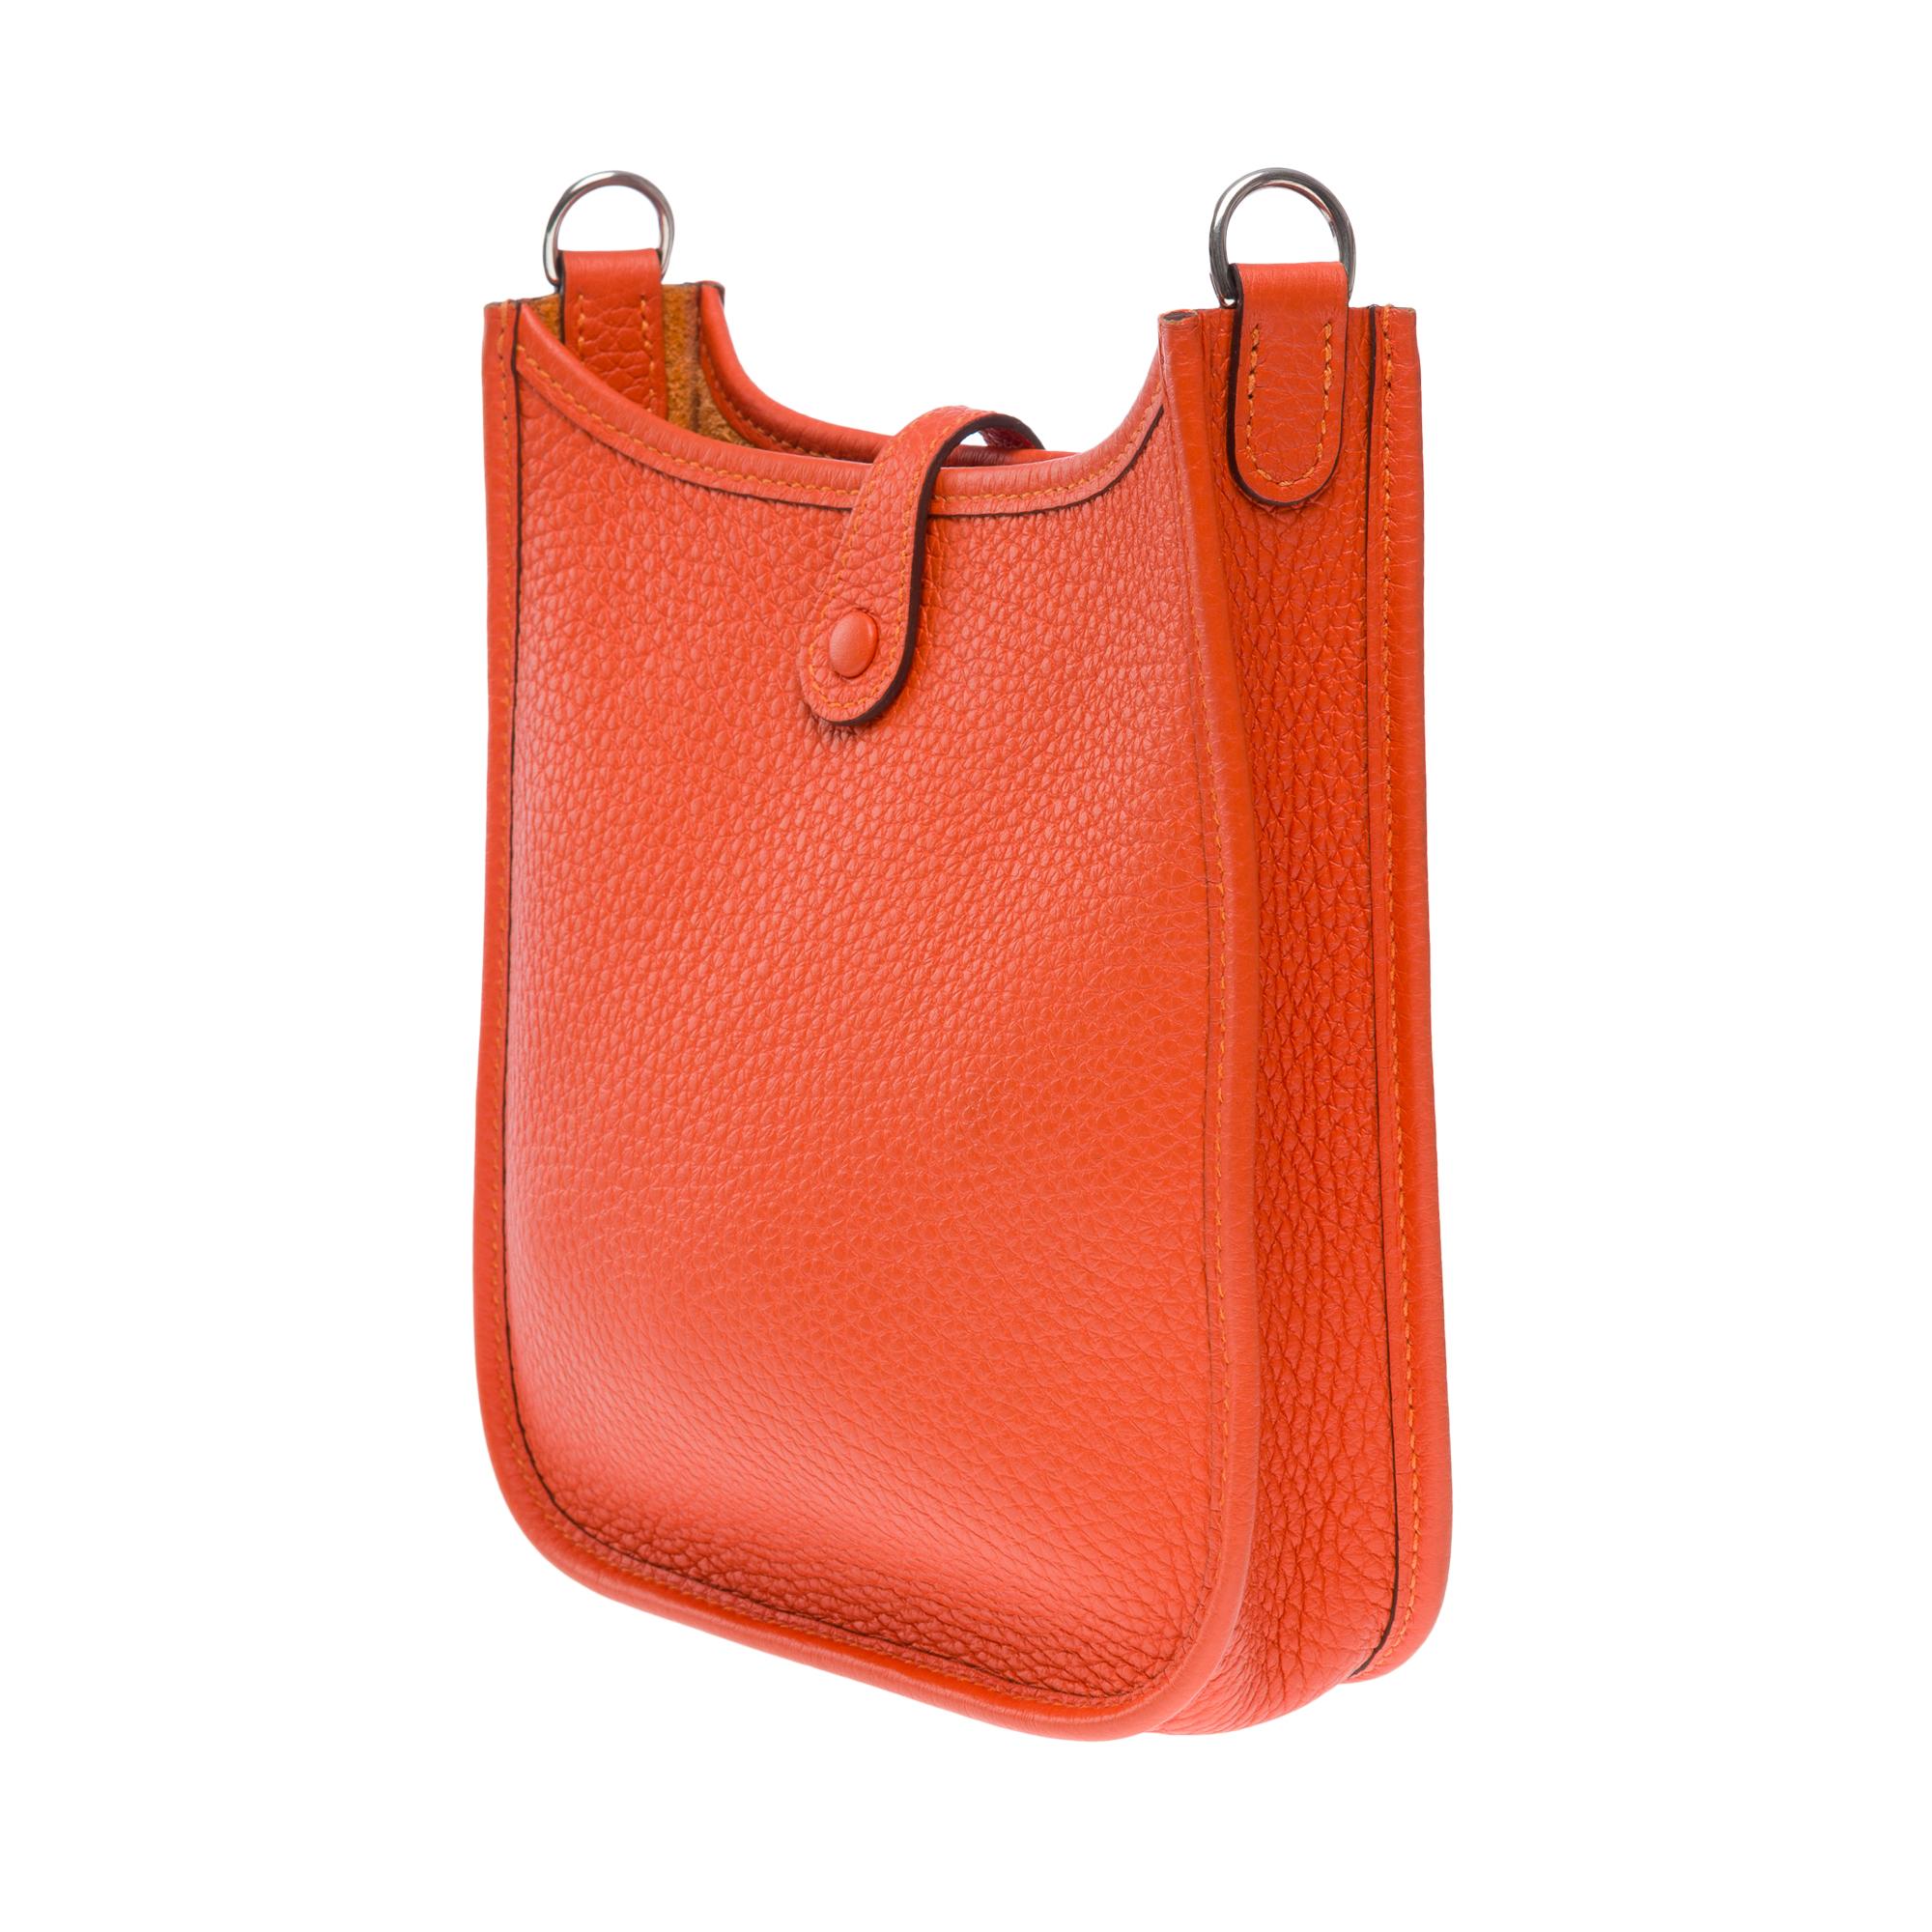 Hermès Evelyne 16 TPM shoulder bag in Taurillon Clemence Orange feu leather, SHW 1